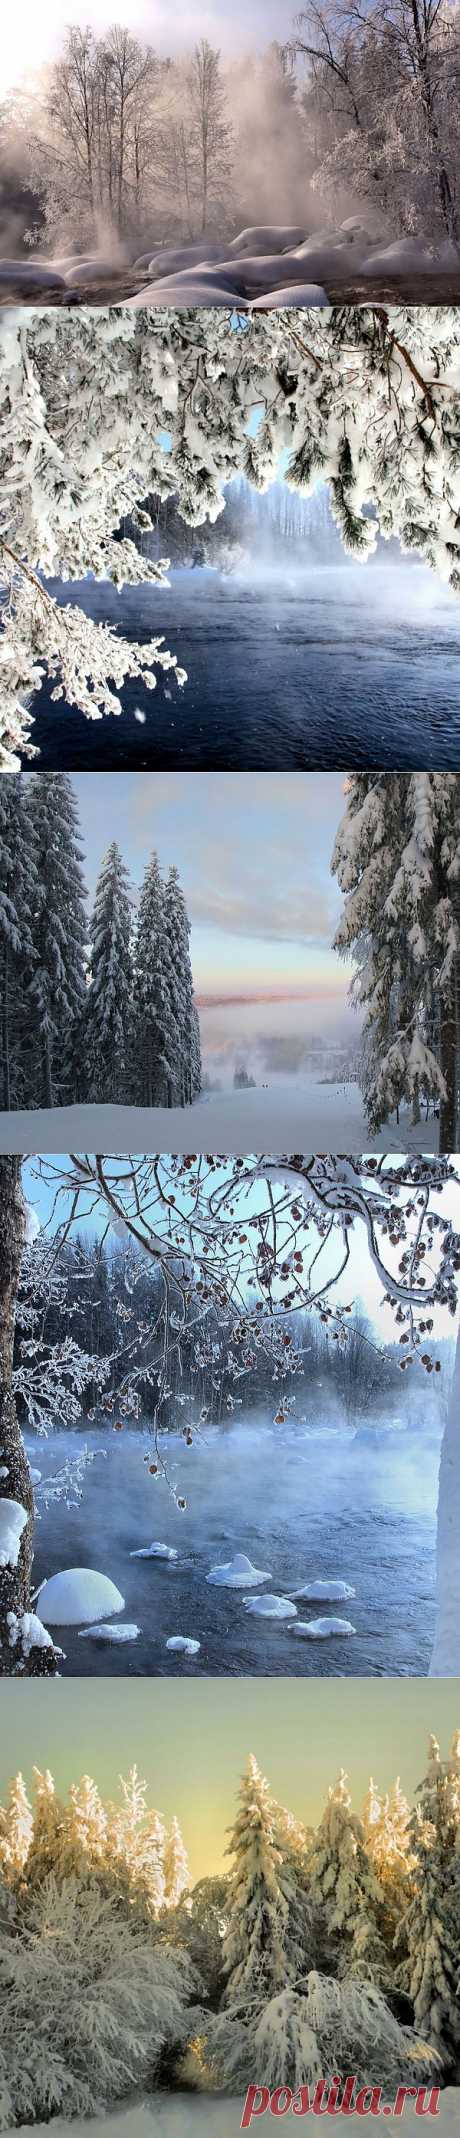 &amp;raquo; Зимние пейзажи 
Красавица-зима в фотообъективе финского фотографа Kari Liimatainen.